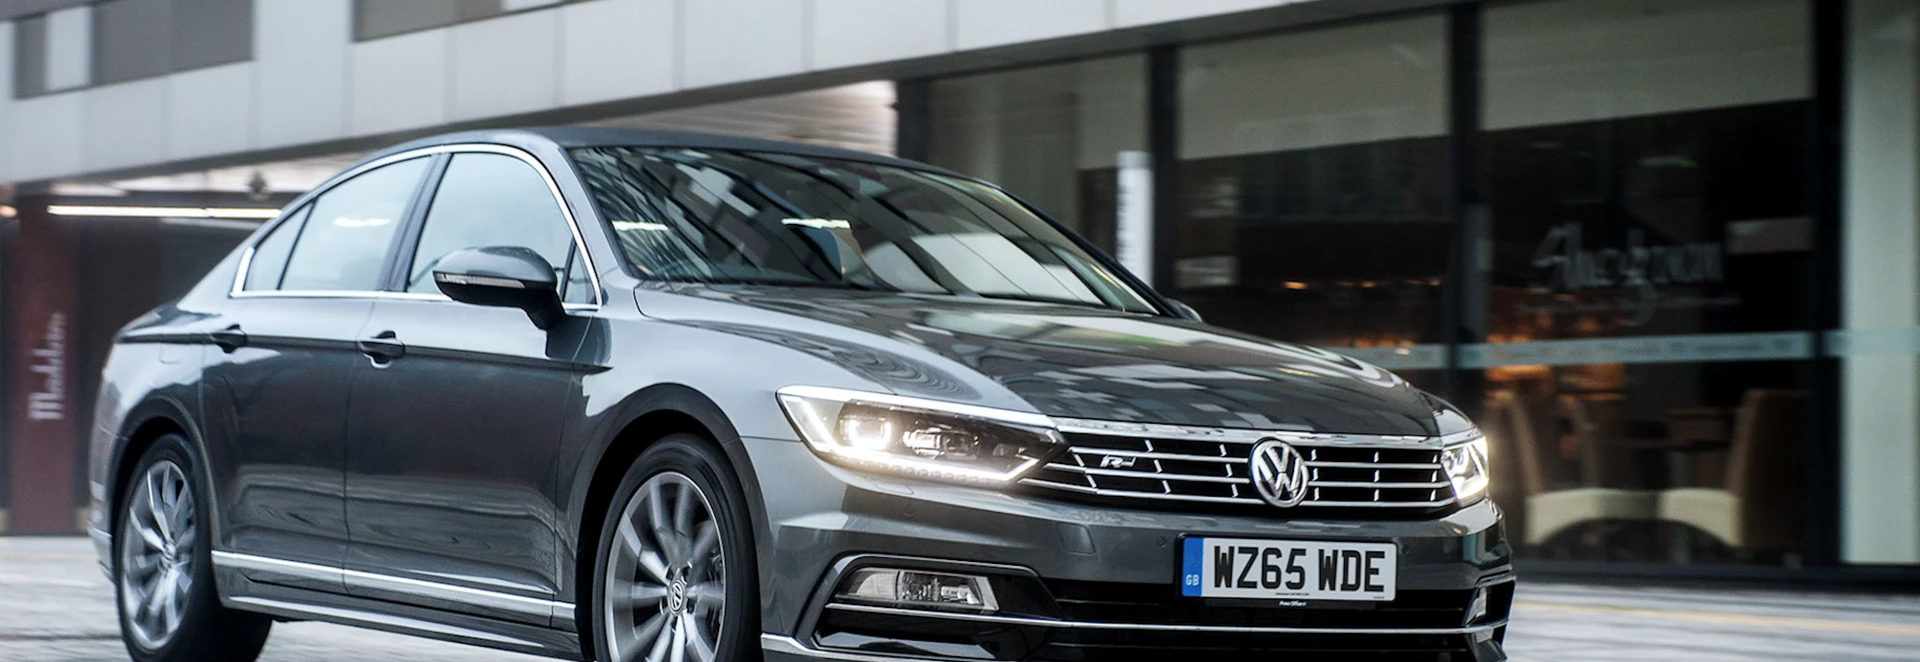 Volkswagen Passat: old vs new 